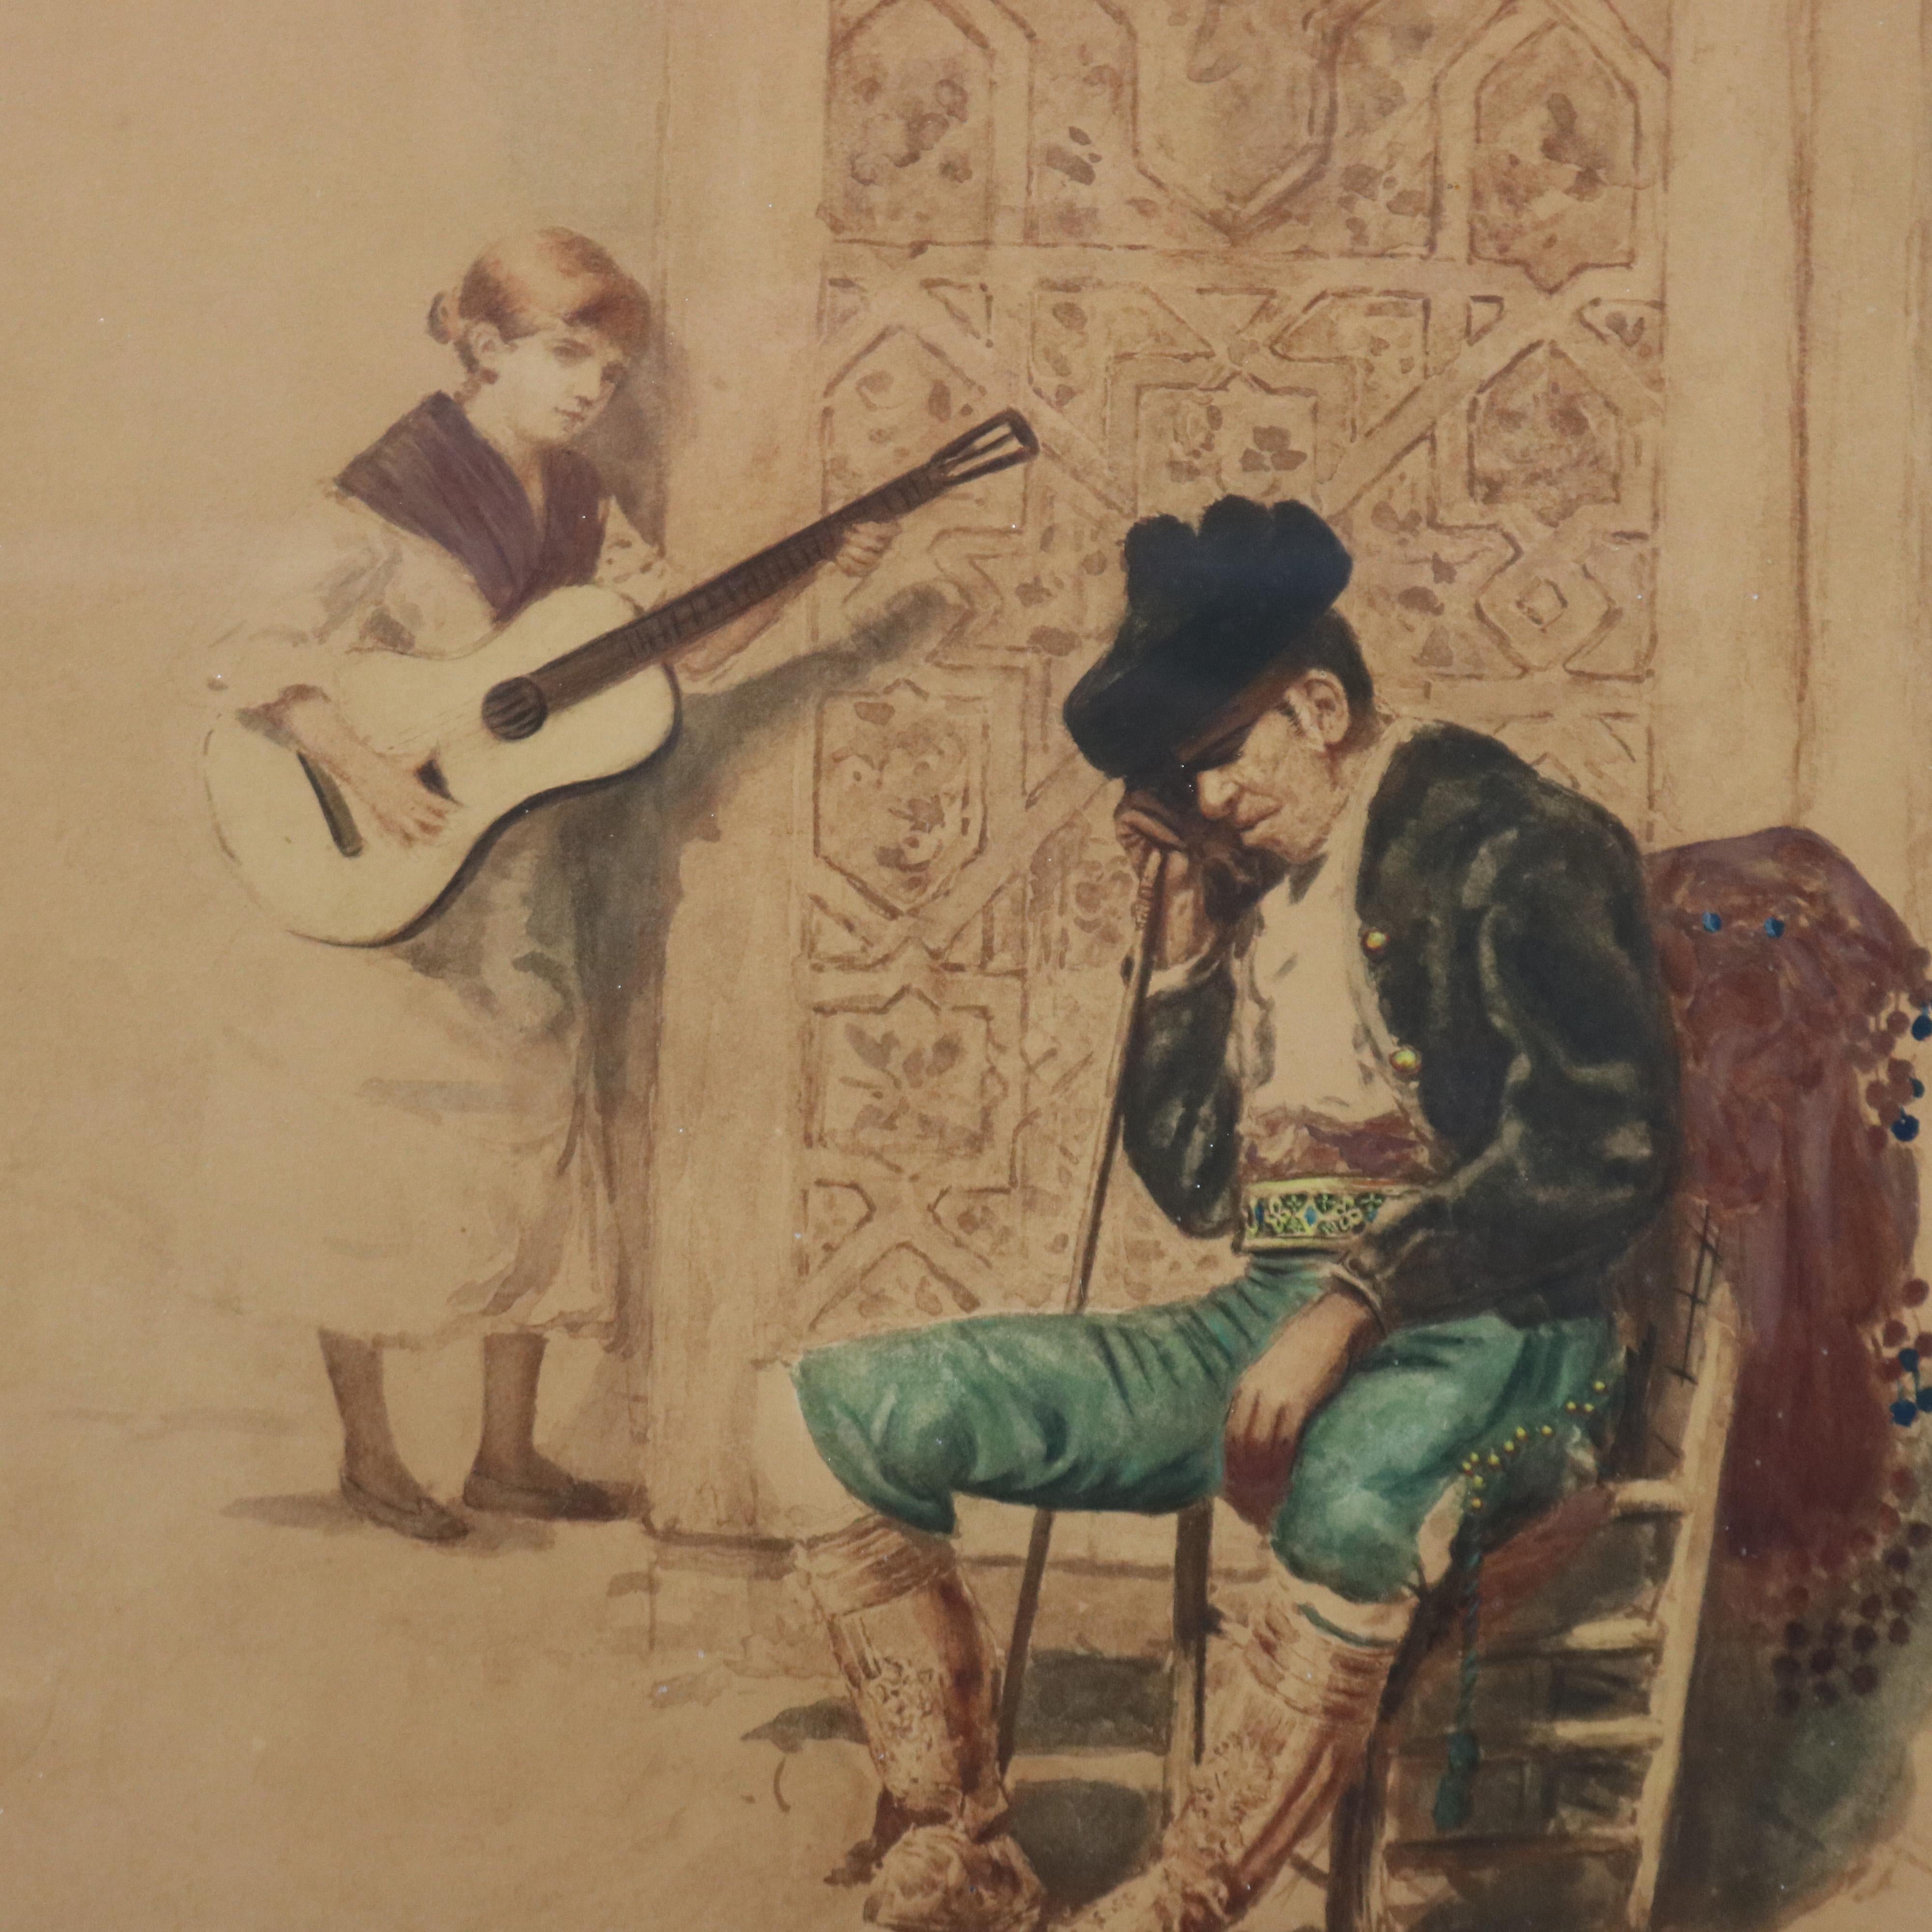 Ein antiker spanischer Druck zeigt den Spanier Siesta mit einem Gitarre spielenden Mädchen, signiert G Ferris, mattiert und gerahmt, um 1888

Maße - 27